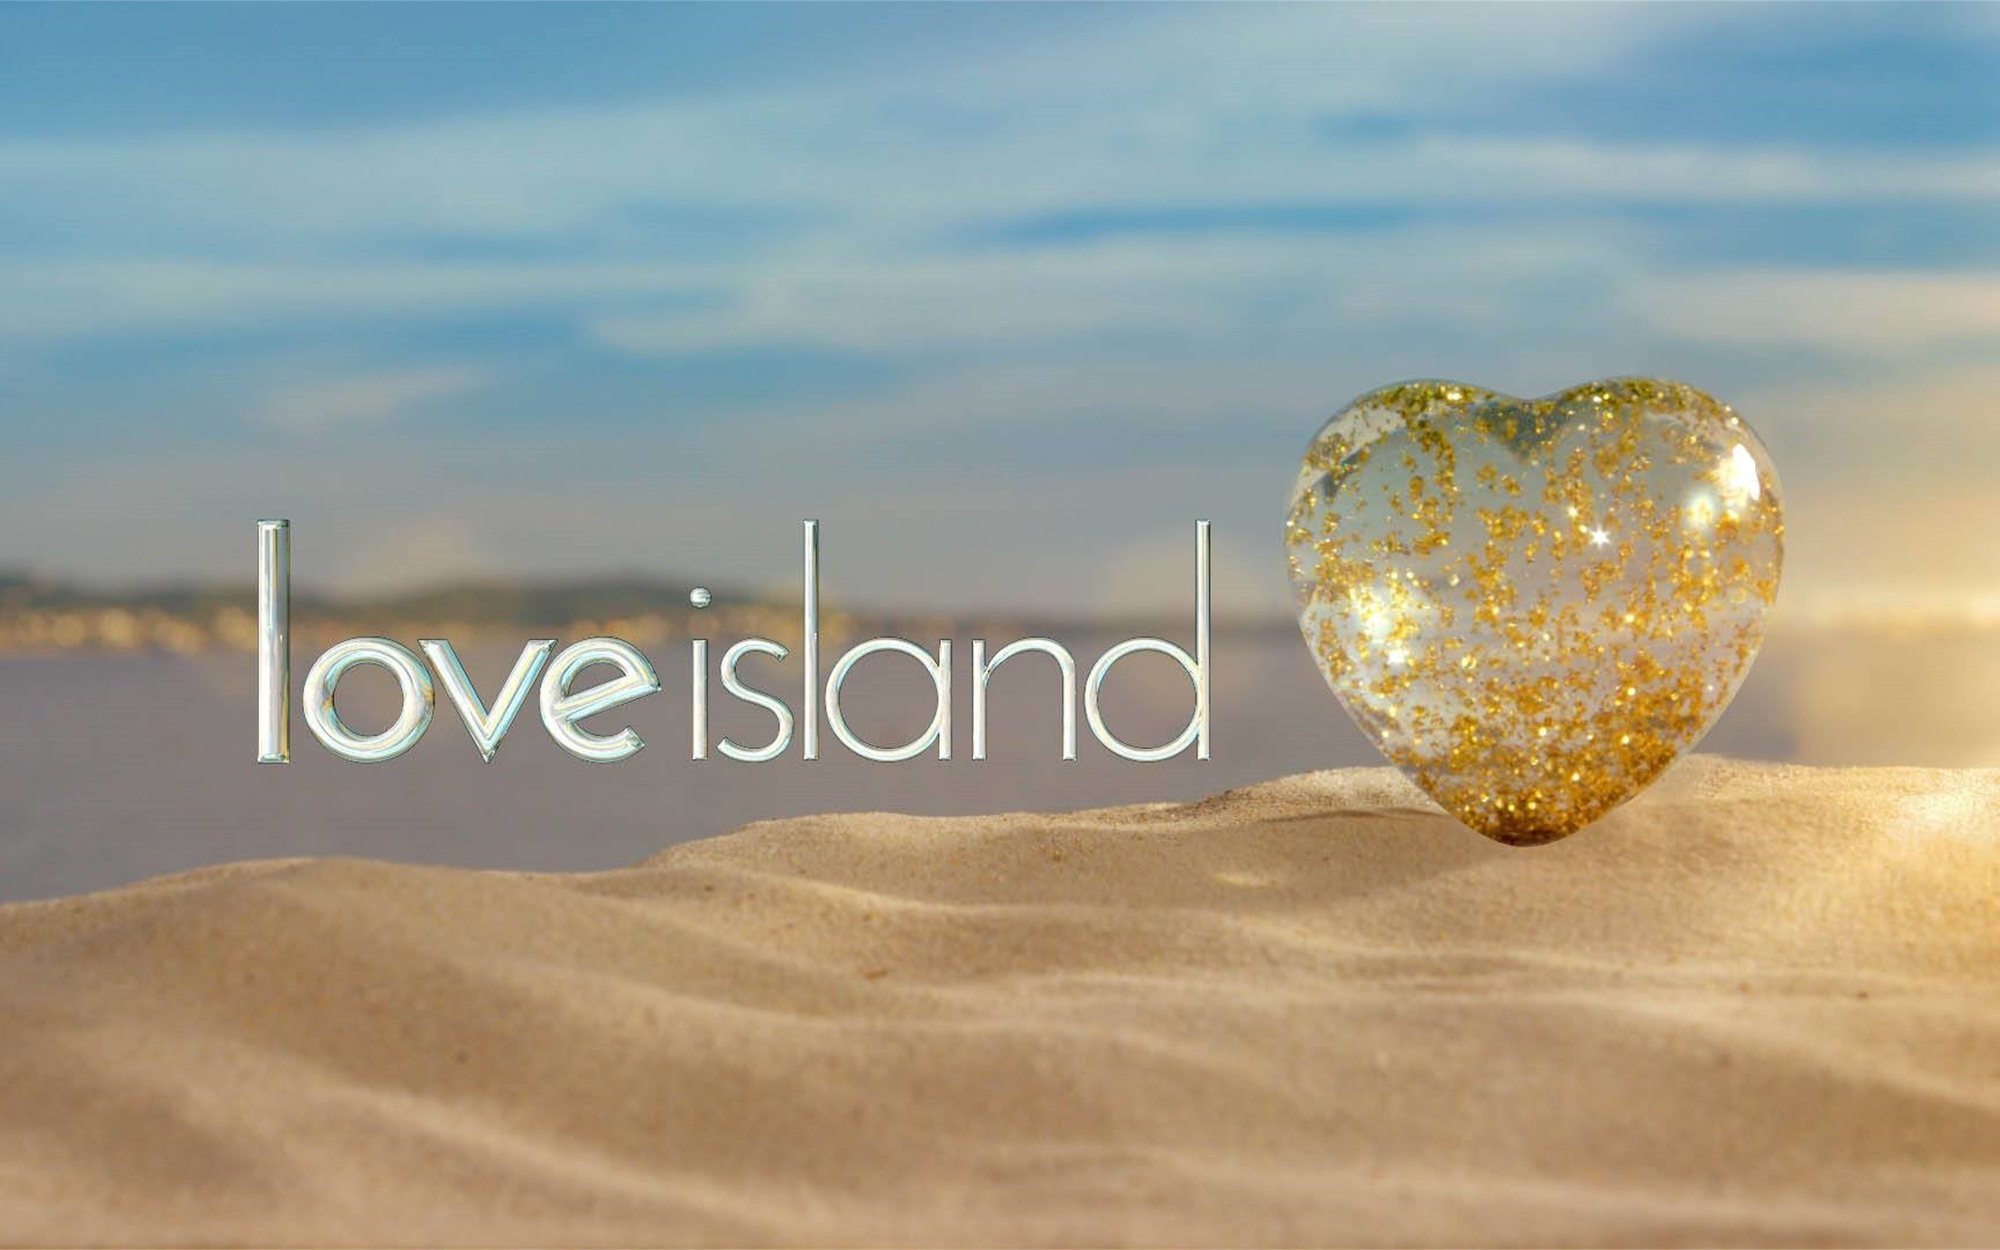 'Love Island' pretende grabar su primera edición en una isla española